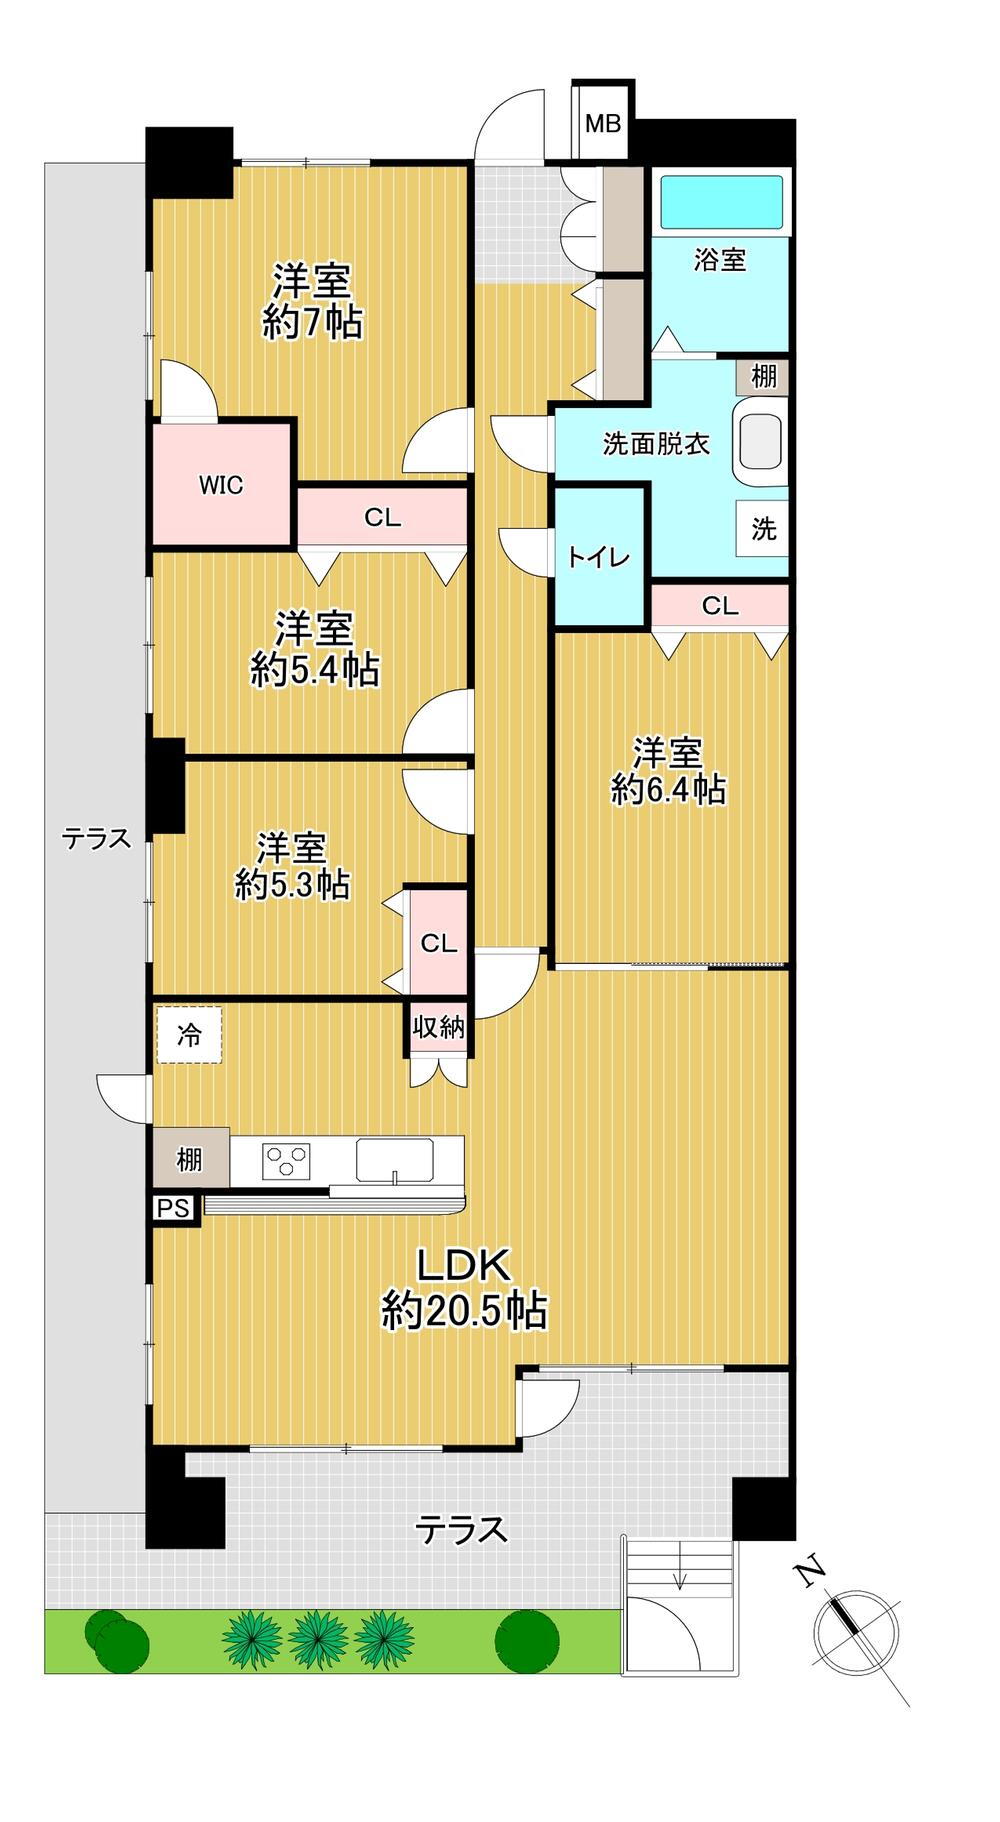 ロフティ甚目寺Ⅱ 4LDK、価格2290万円、専有面積103.91m<sup>2</sup> マンションながら両隣にお部屋がないので隣人トラブルのリスクが少なくなっております